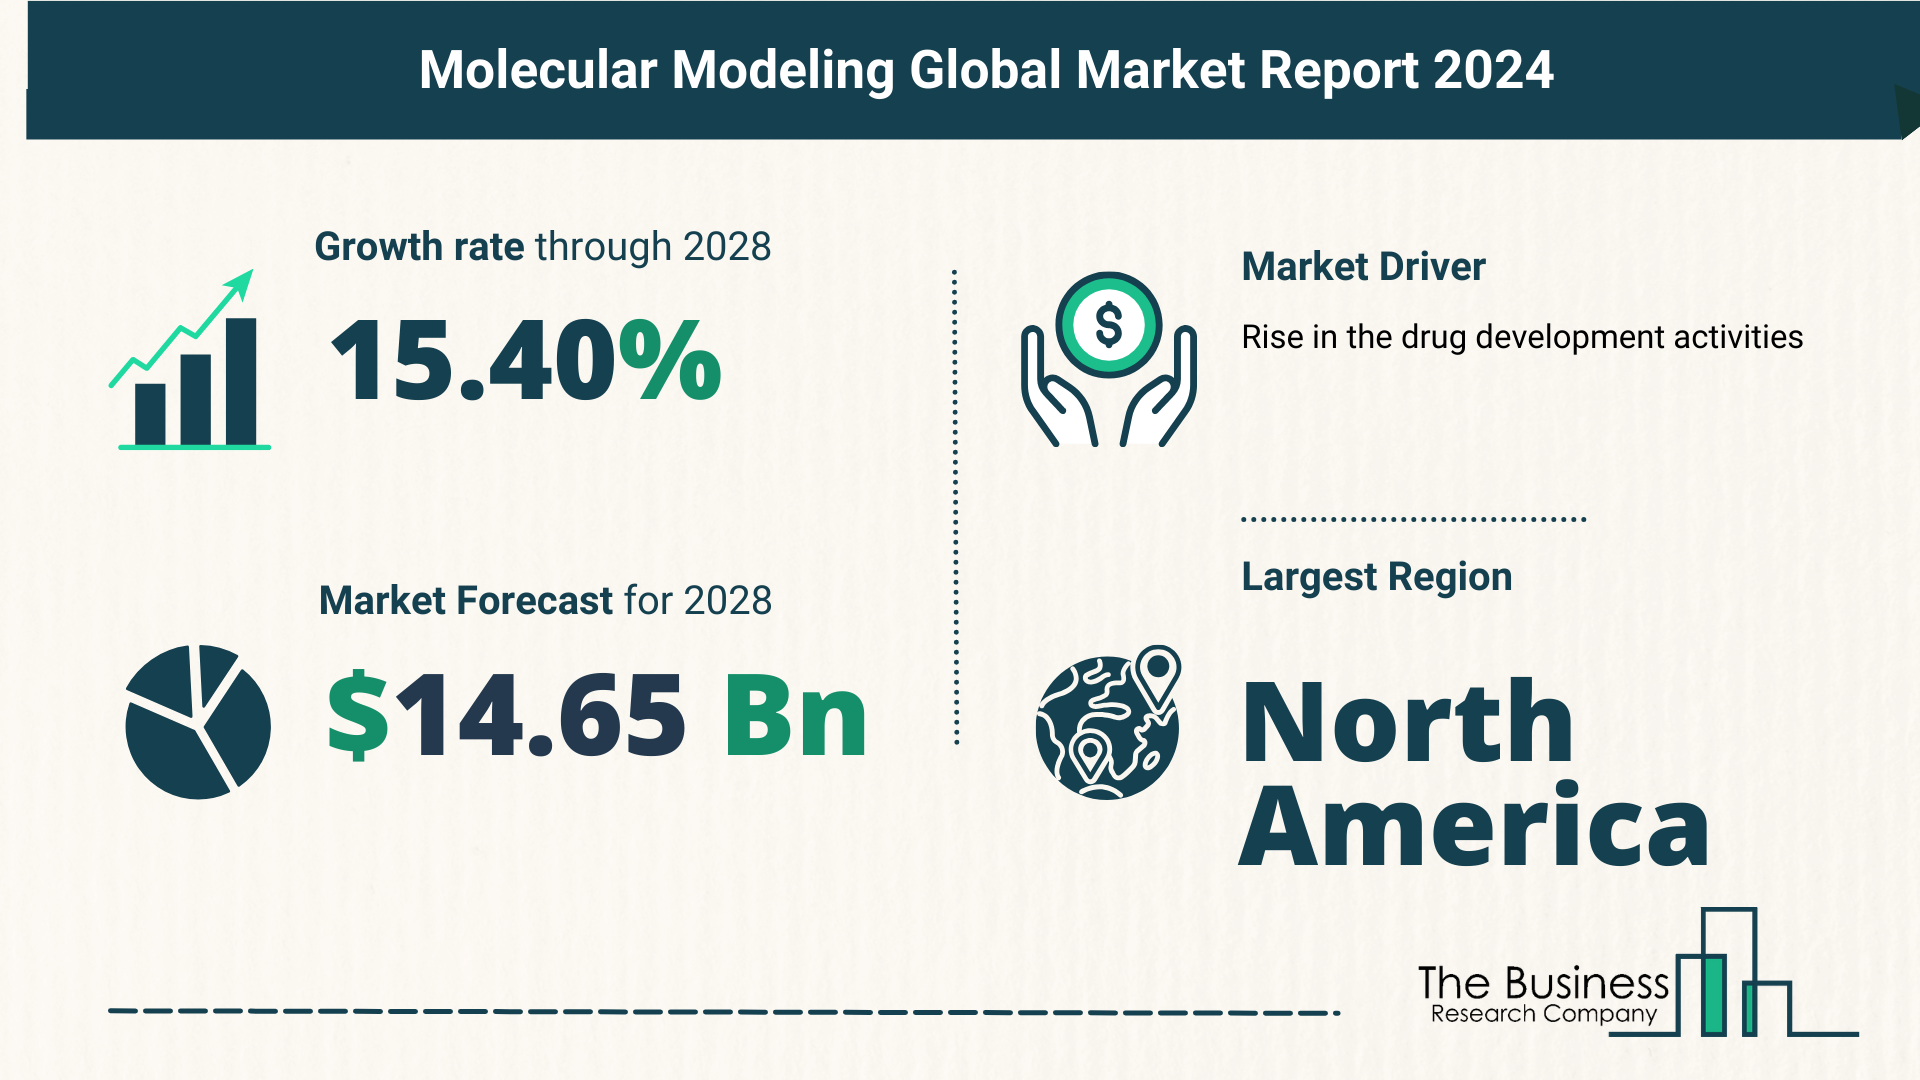 Global Molecular Modeling Market